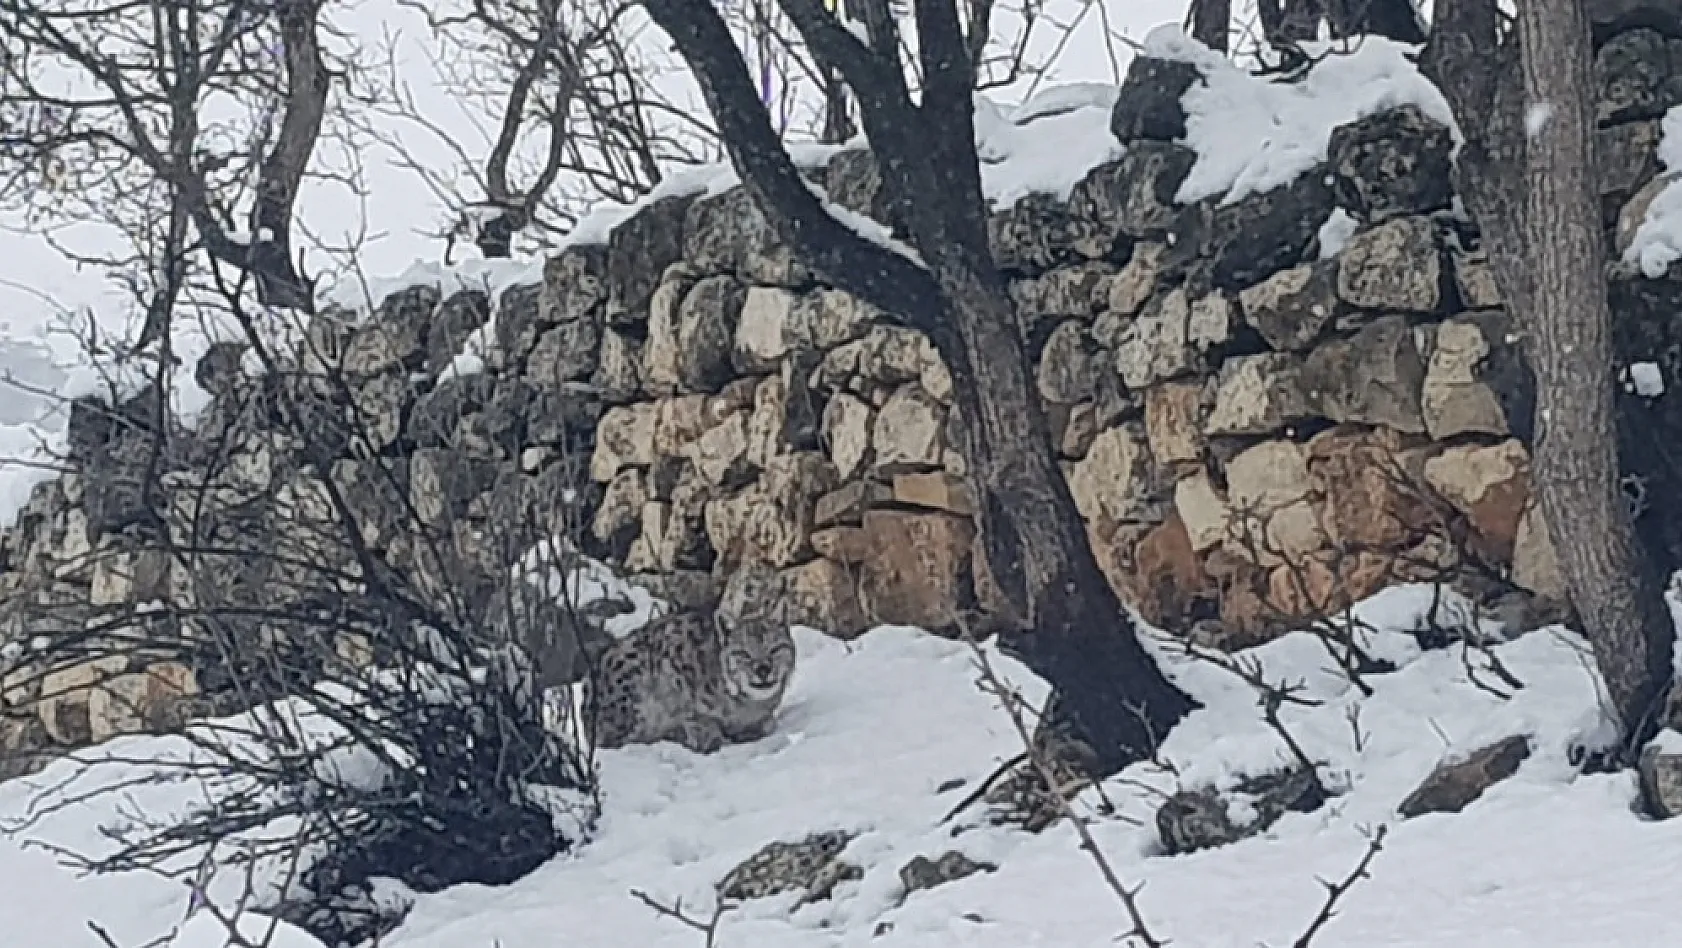 Tunceli'de koruma altındaki vaşak görüntülendi 